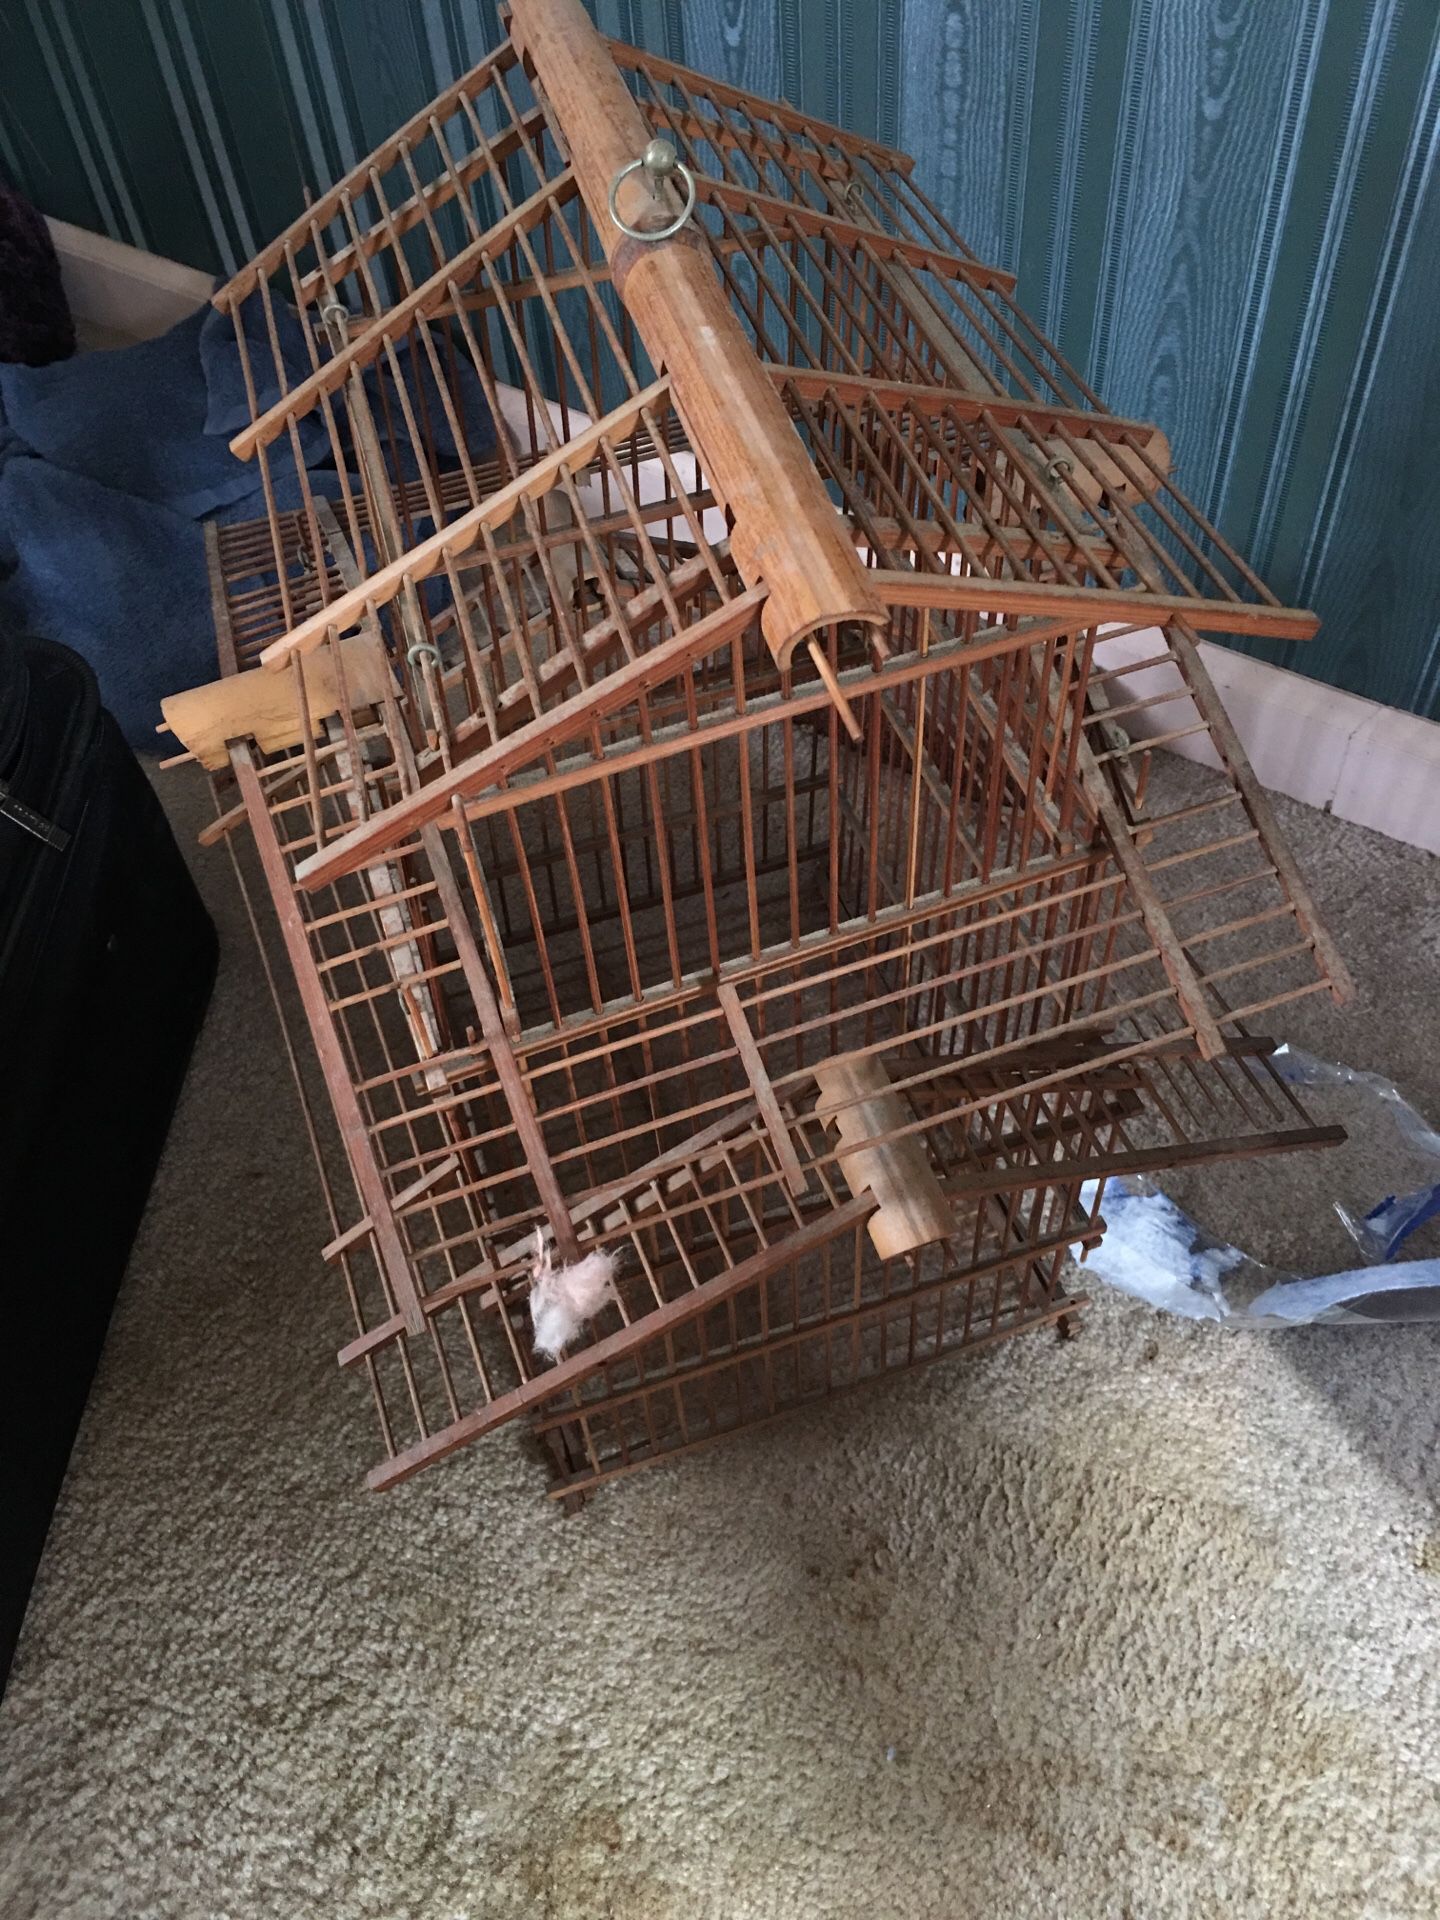 Decorative wooden bird cage